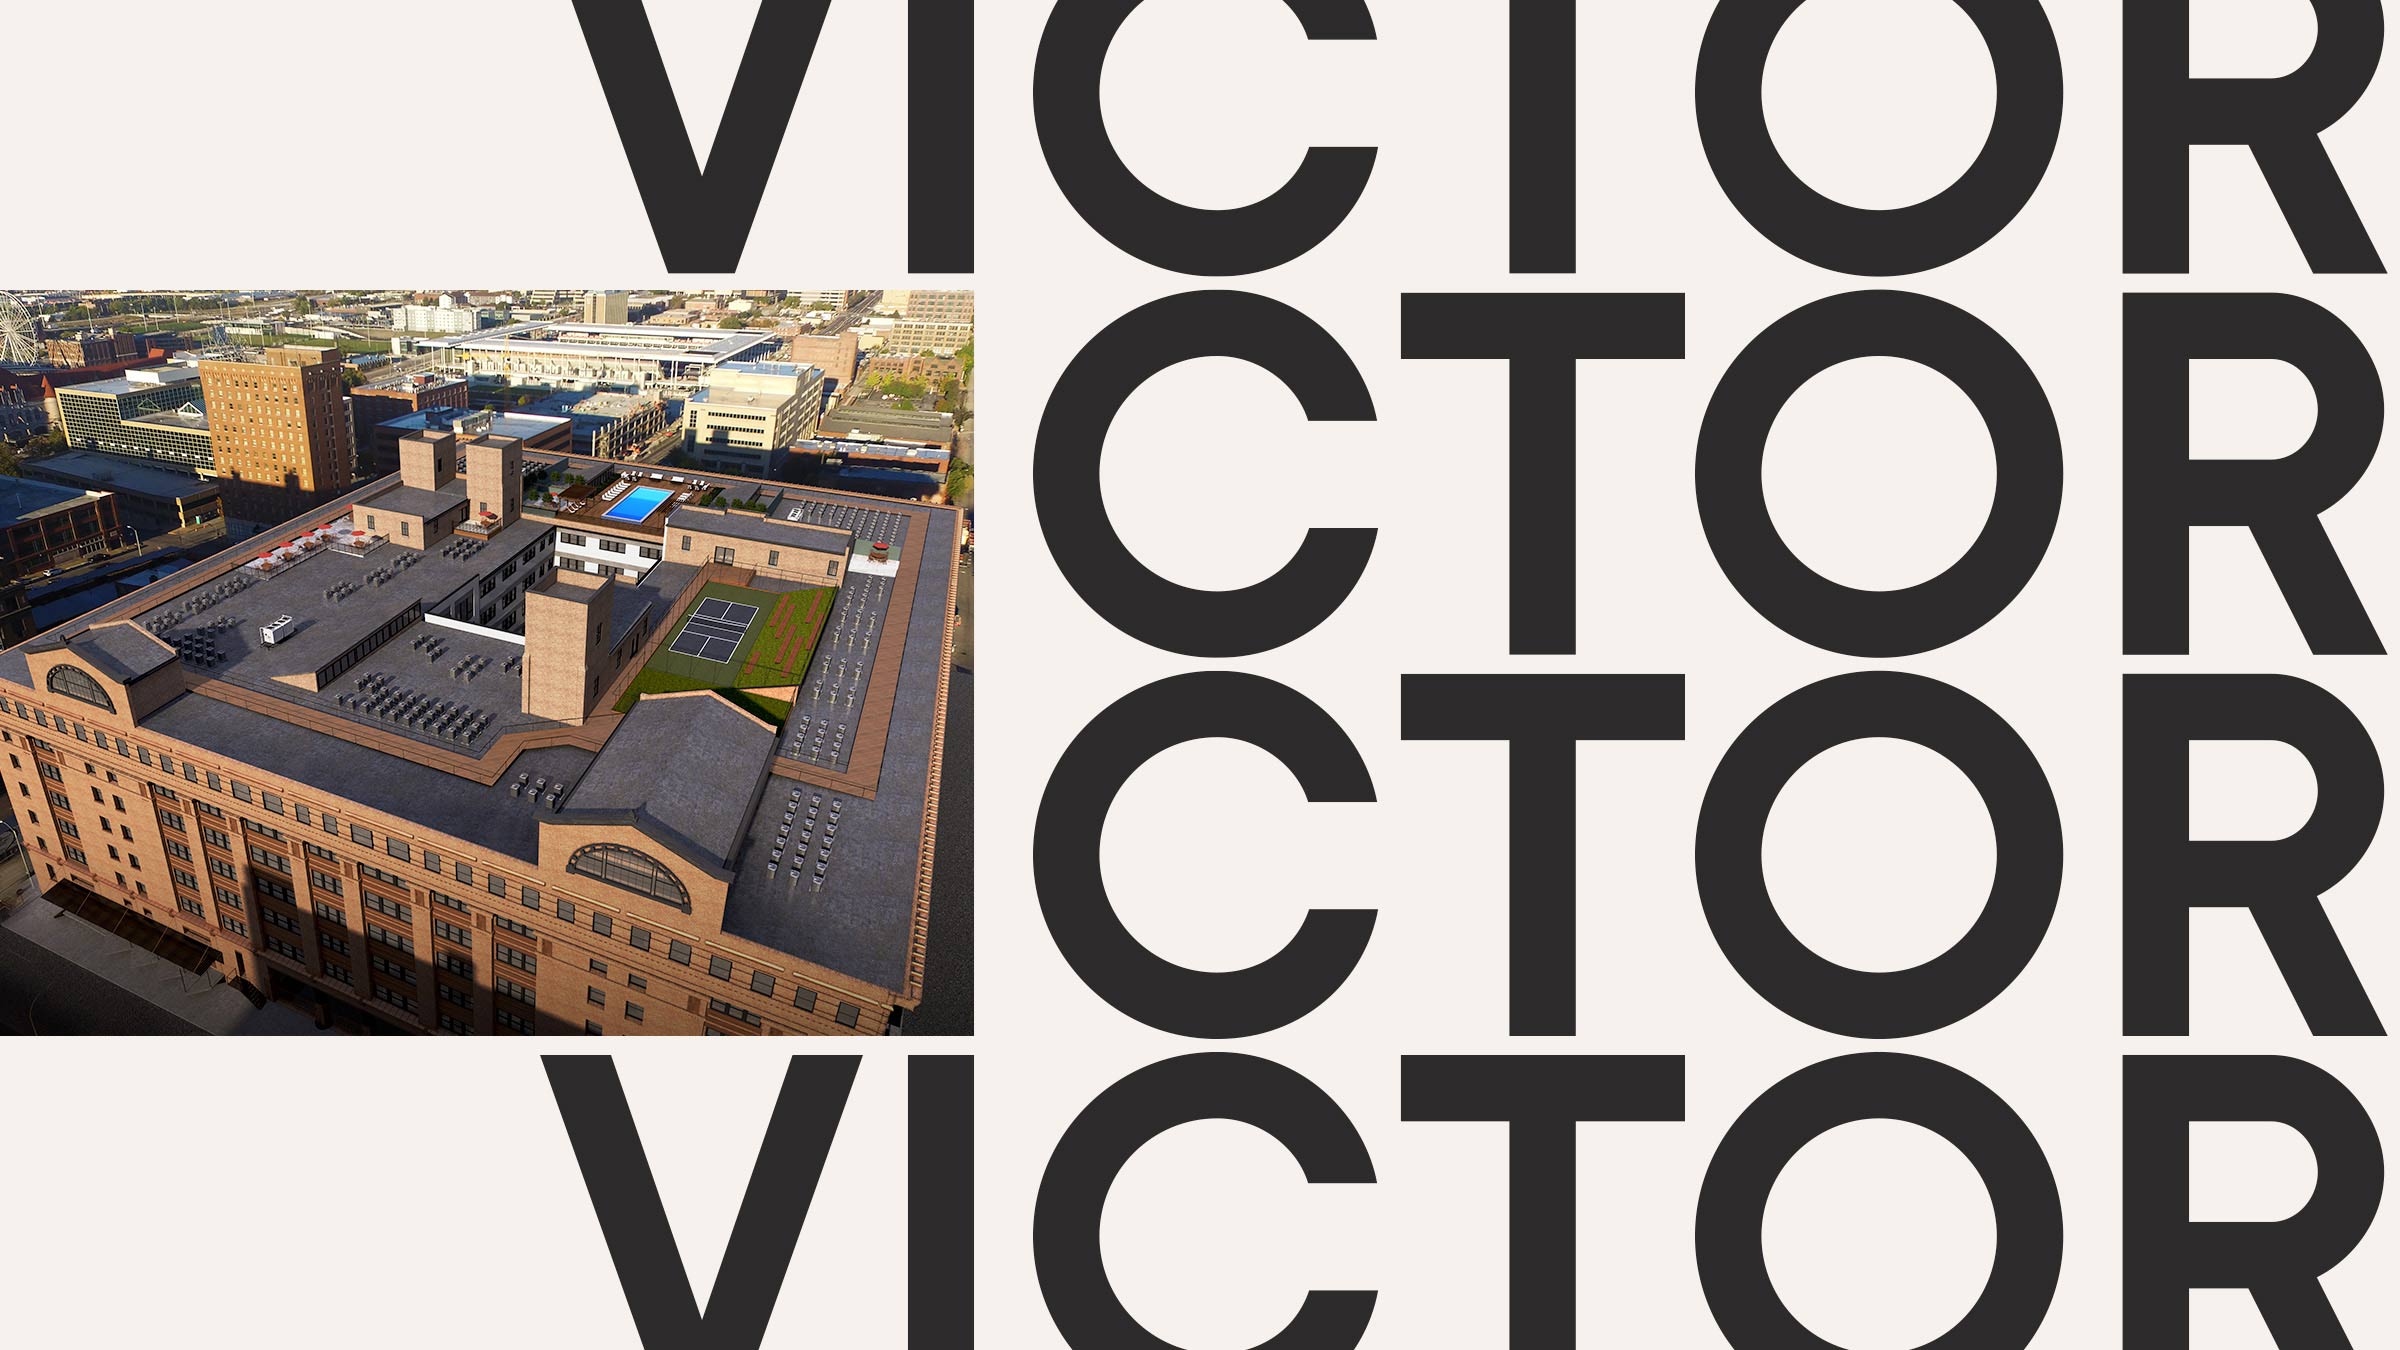 The Victor residential development branding